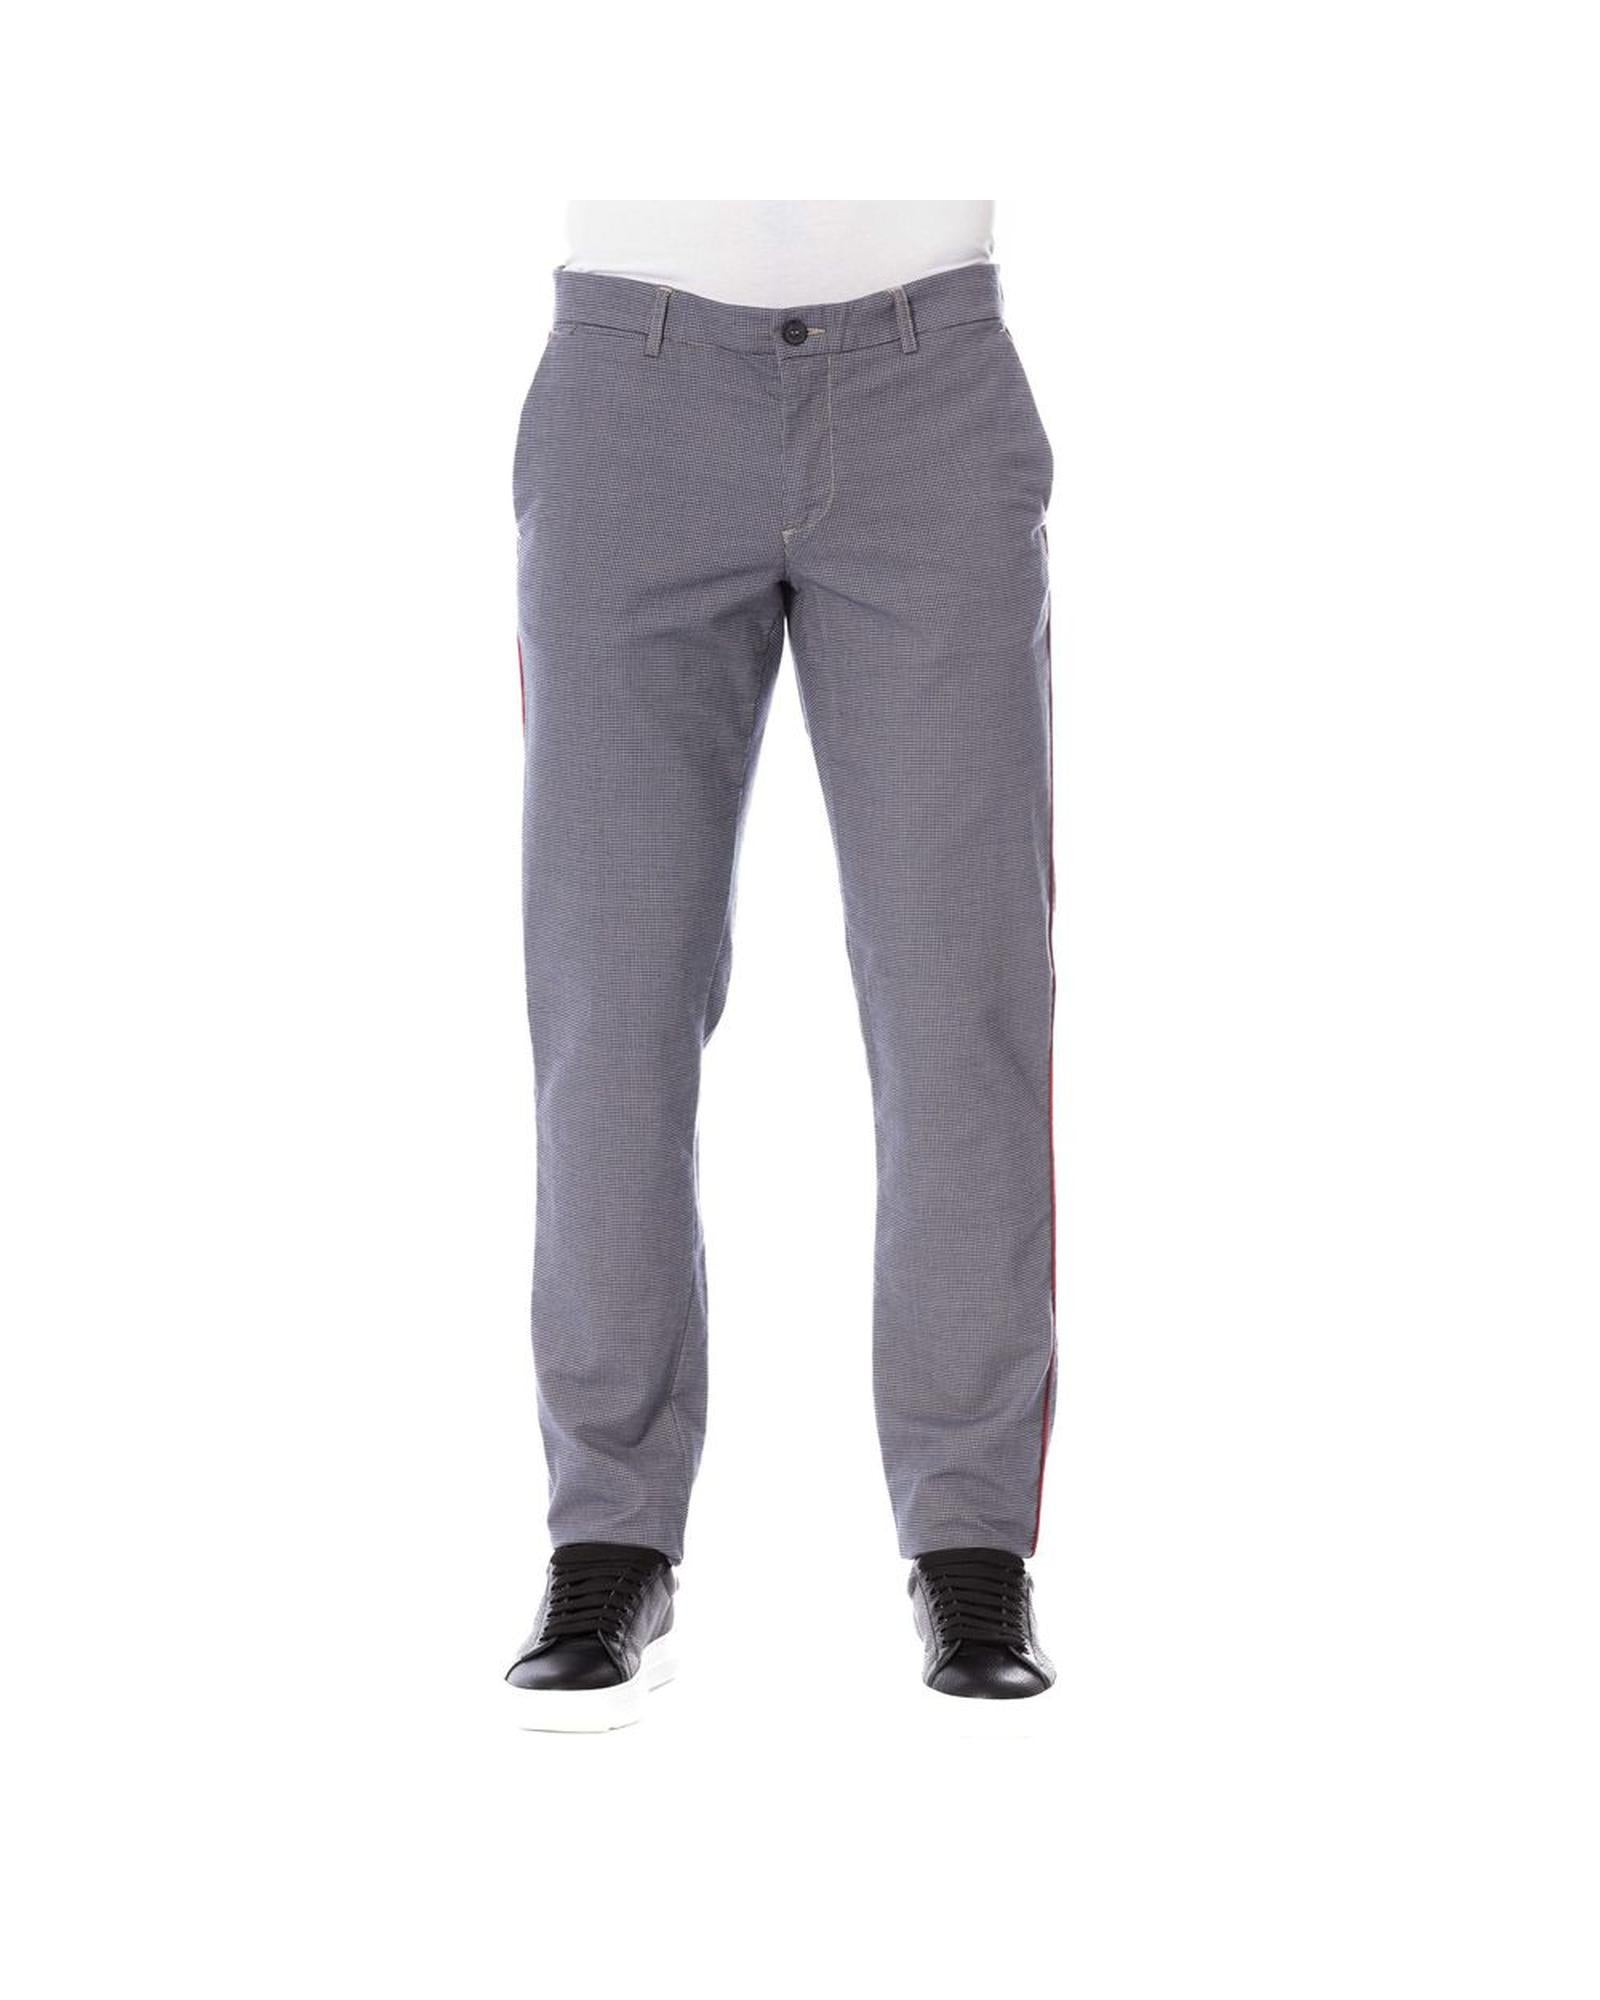 Men's Blue Cotton Jeans & Pant - W44 US